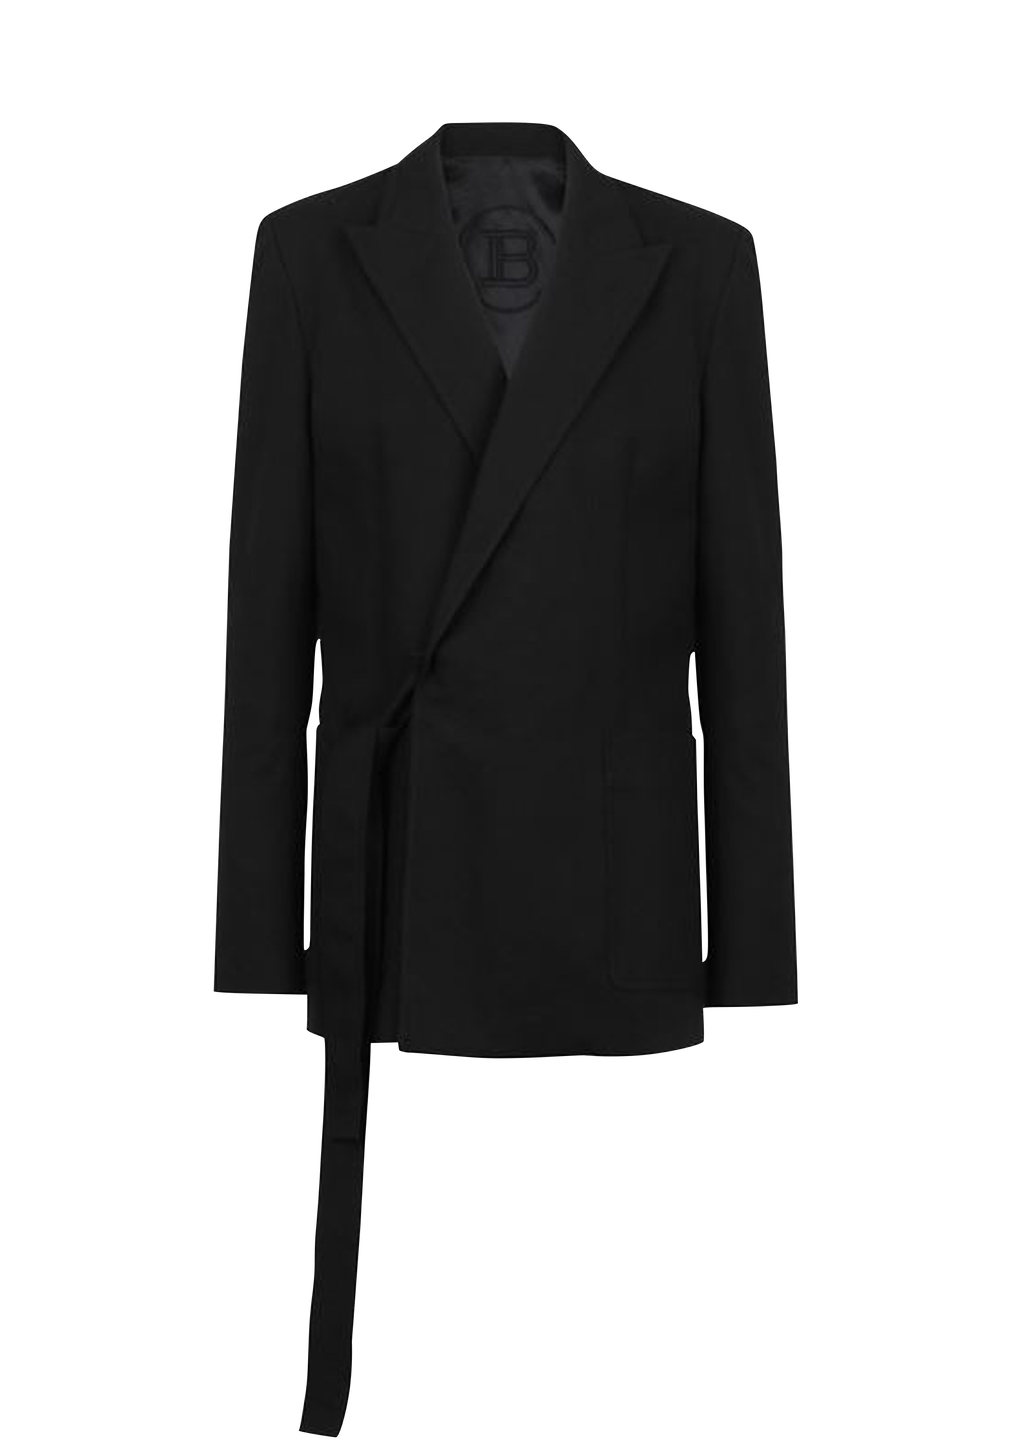 Asymmetrical cotton blazer, black, hi-res